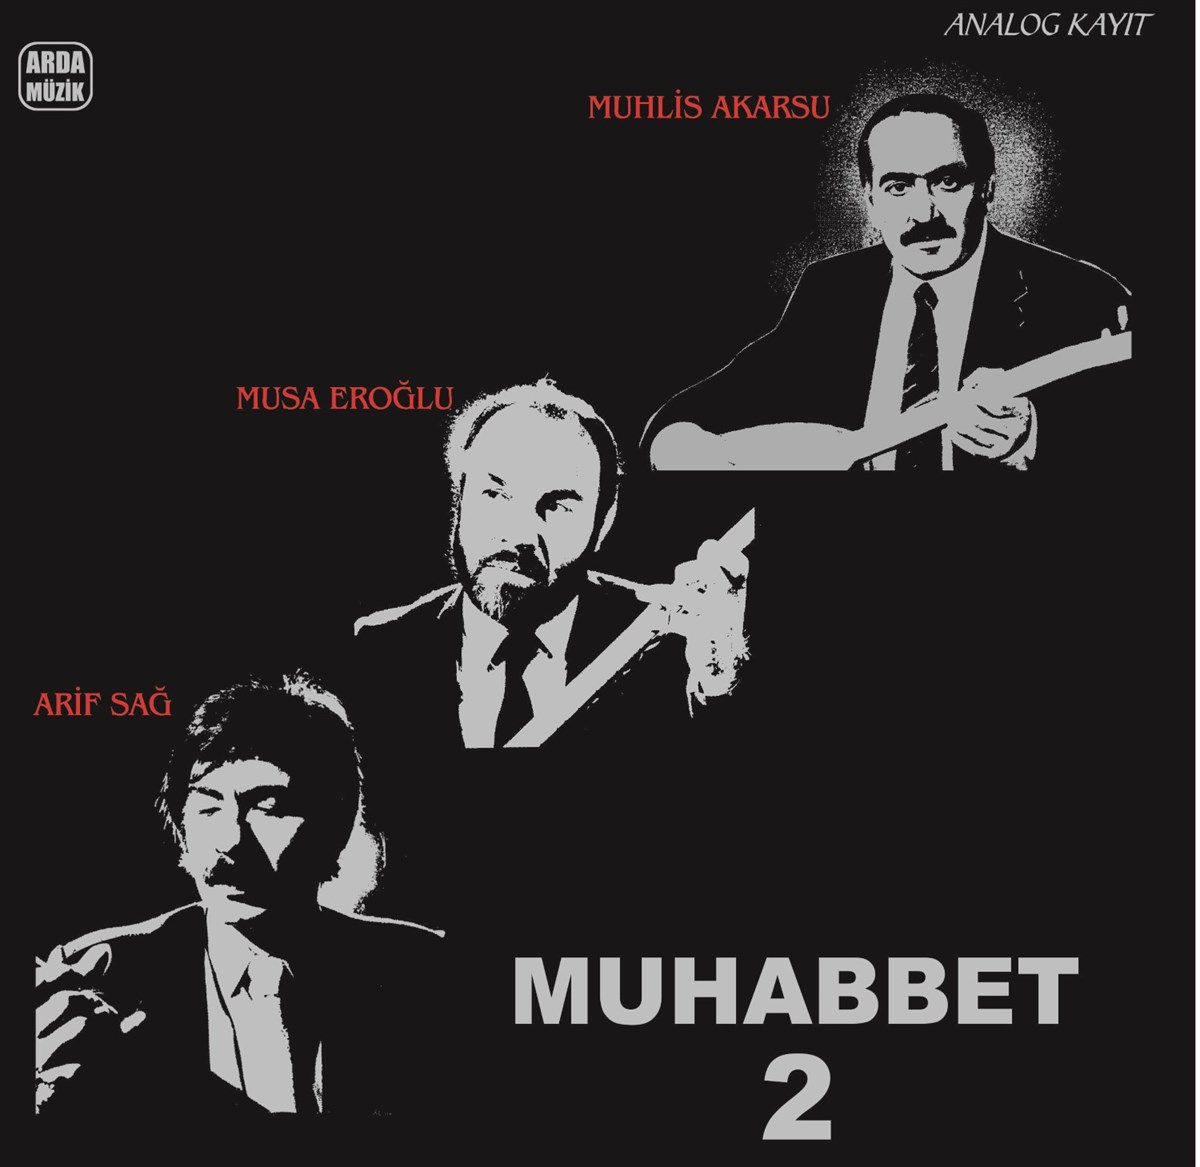 Muhabbet 2 – Musa Eroğlu Arif Sağ Muhlis Akarsu – Plak